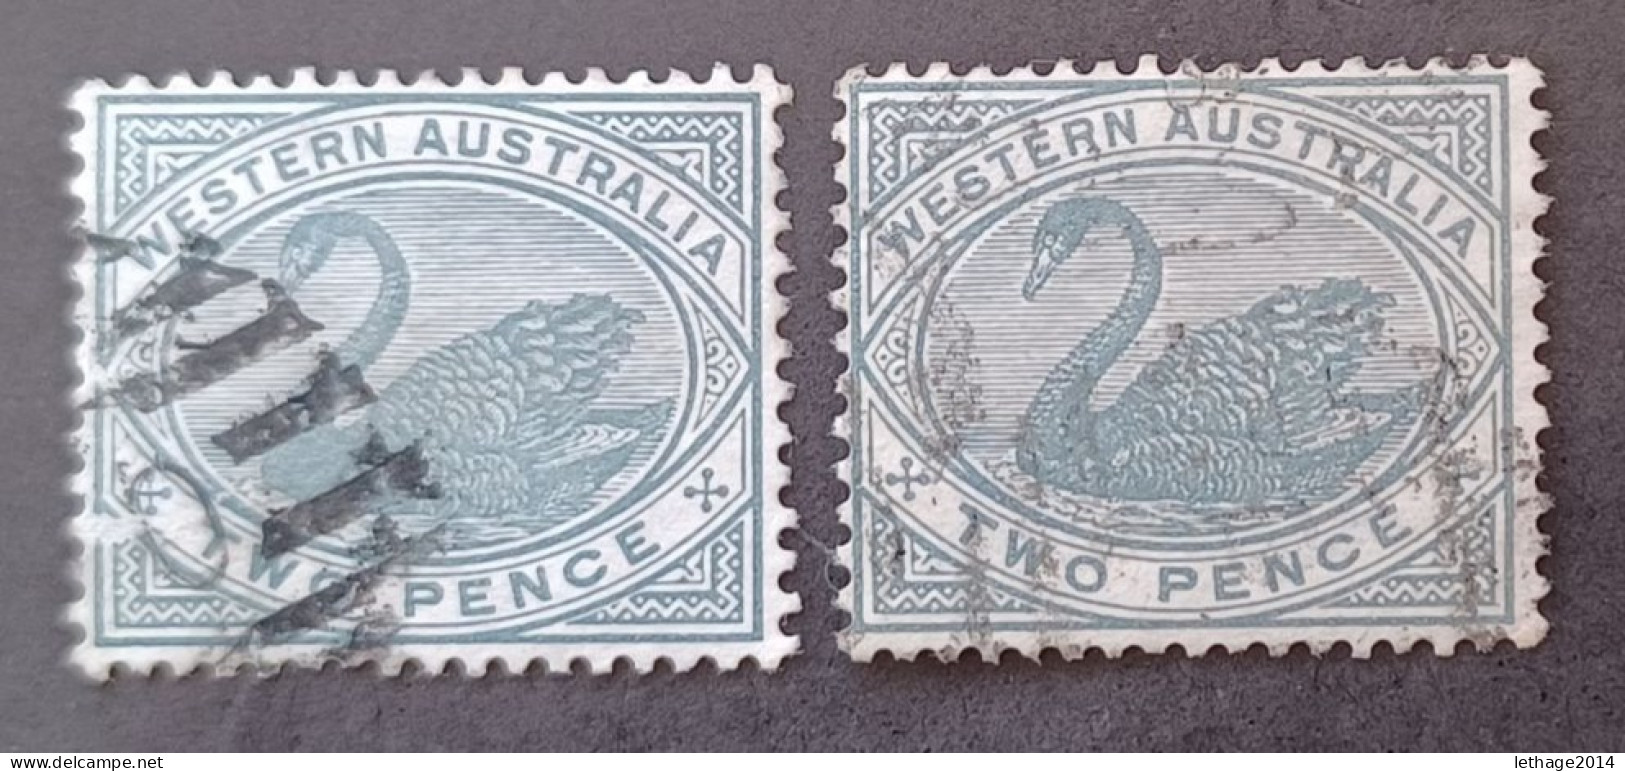 WESTERN AUSTRALIA 1888 SWAN CAT GIBBONS N 96 WMK CROWN CA - Gebruikt